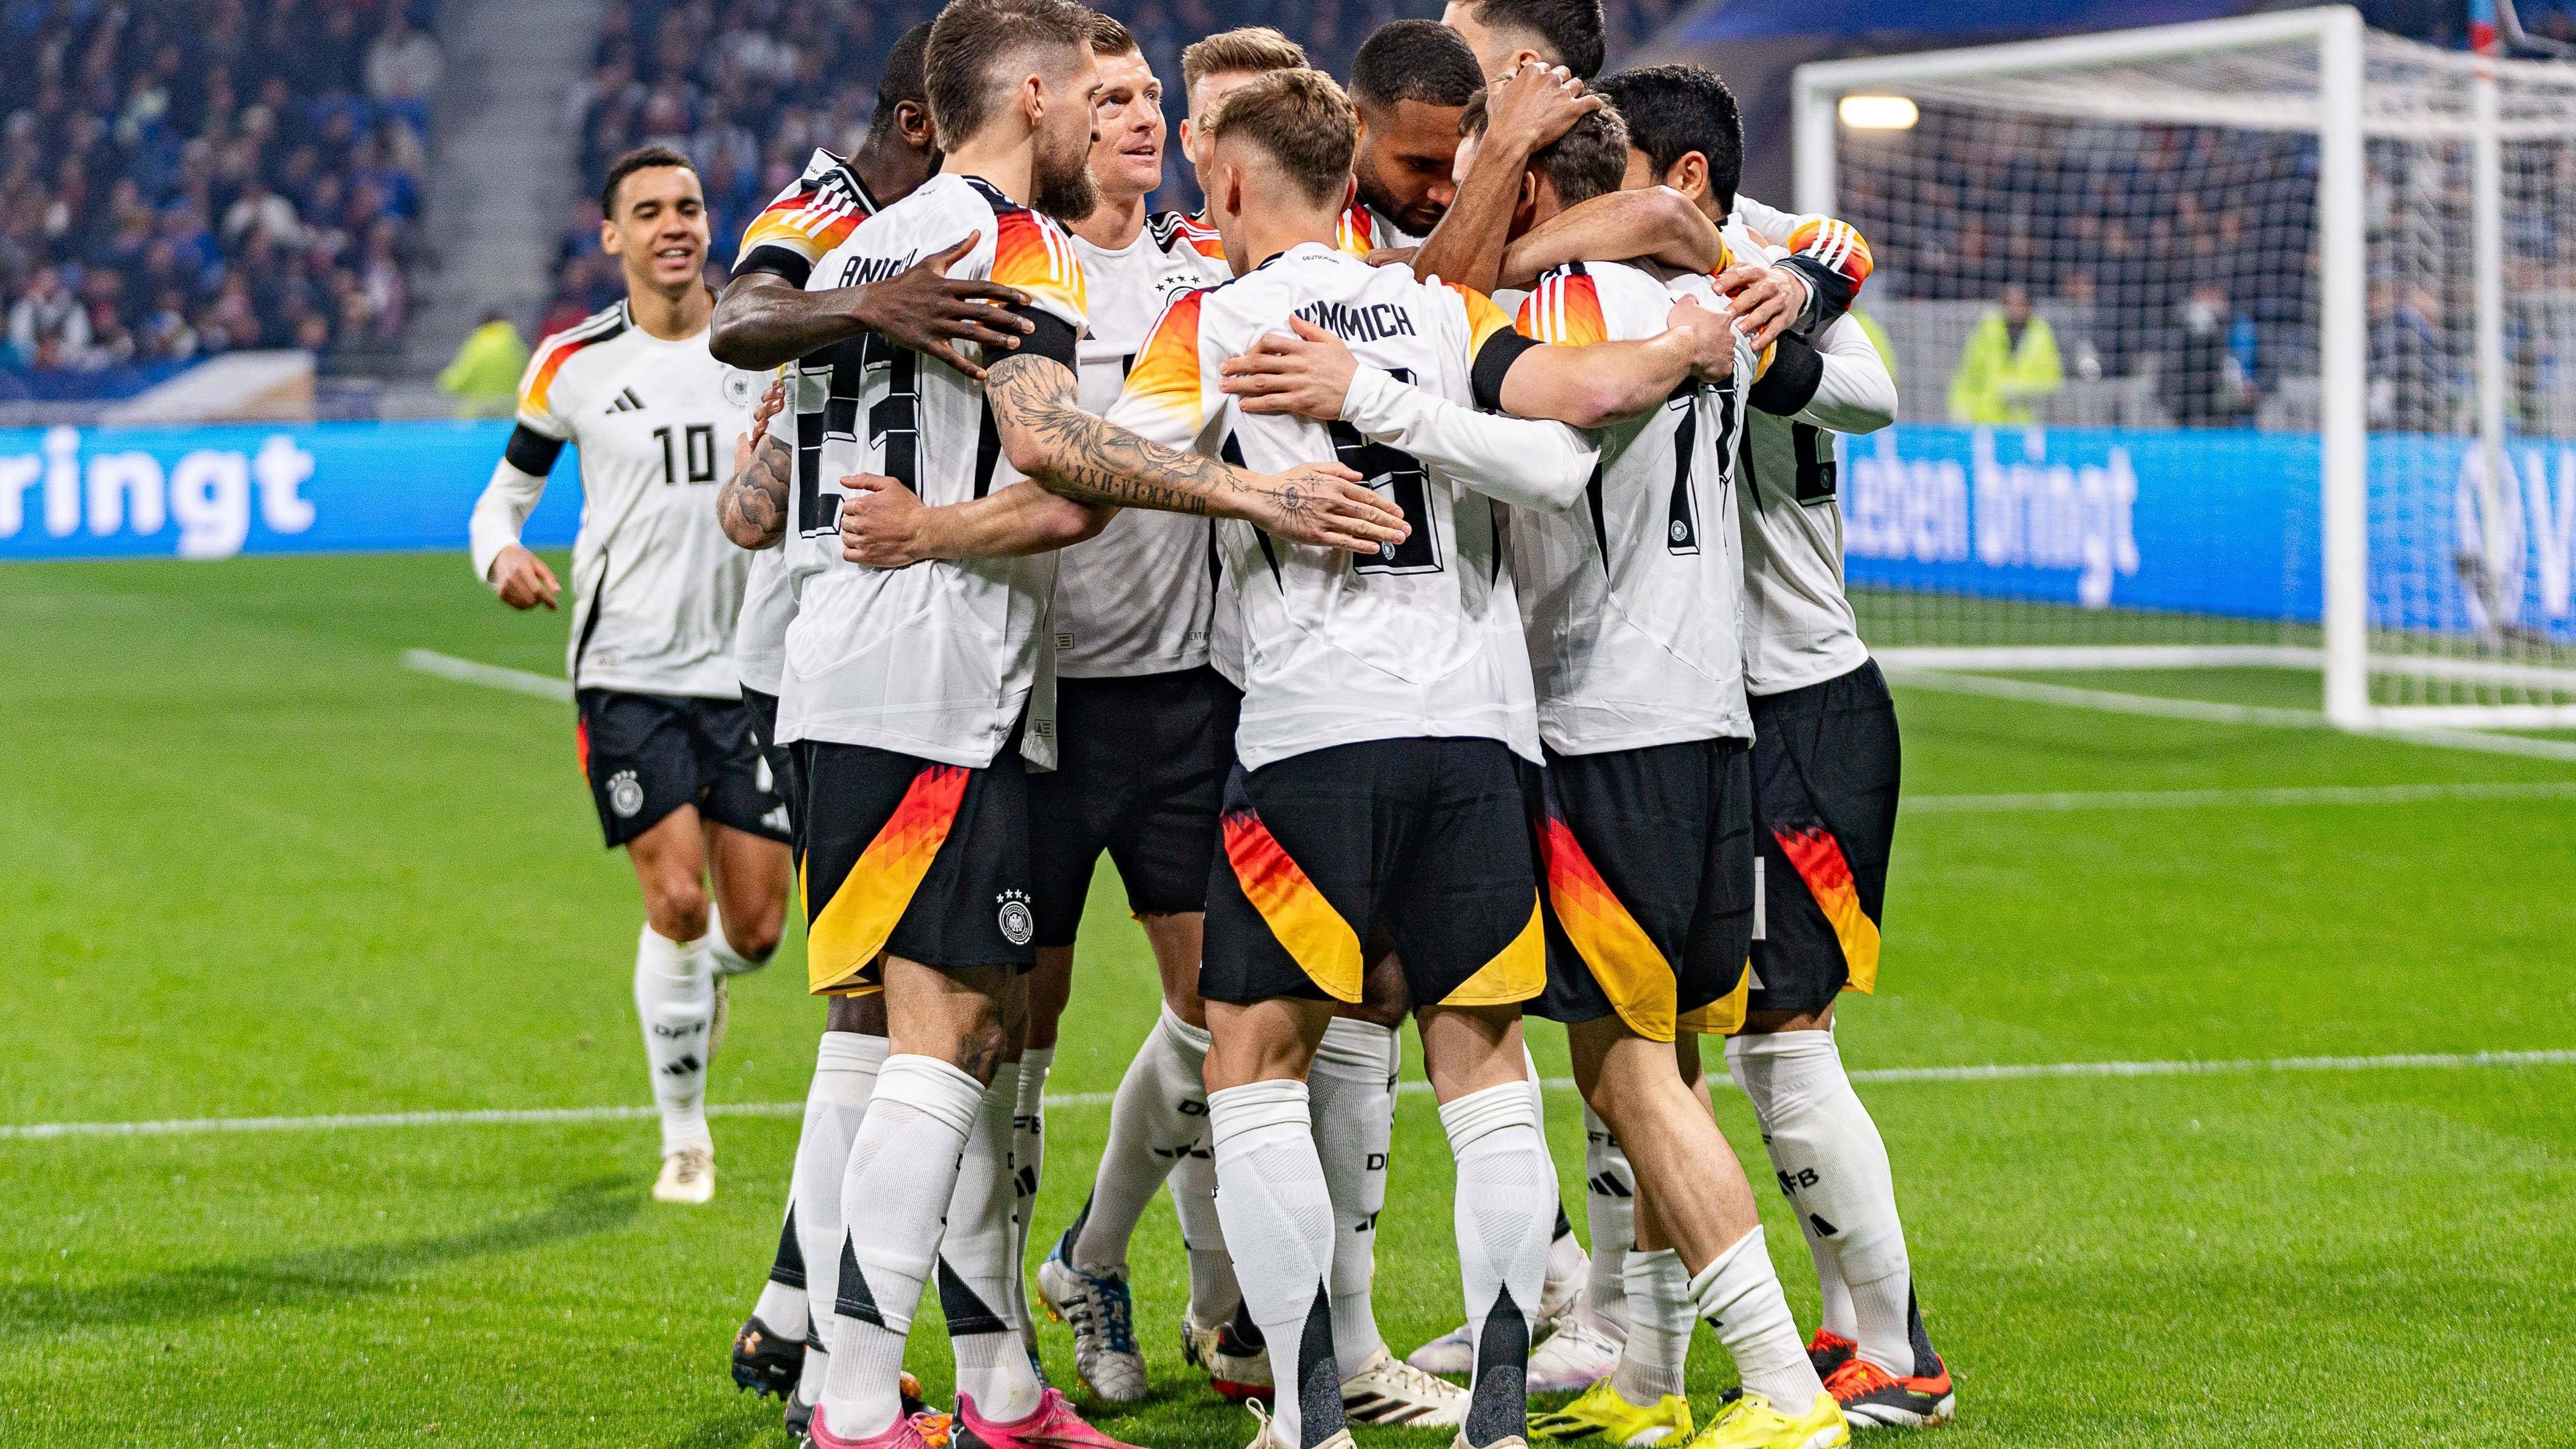 <strong>Frankreich vs. Deutschland: Noten und Einzelkritiken beider Teams</strong><br>Deutschland schlägt Frankreich auswärts mit 2:0 und kann dabei vor allem im zweiten Durchgang überzeugen. Die Noten und Einzelkritiken beider Teams.